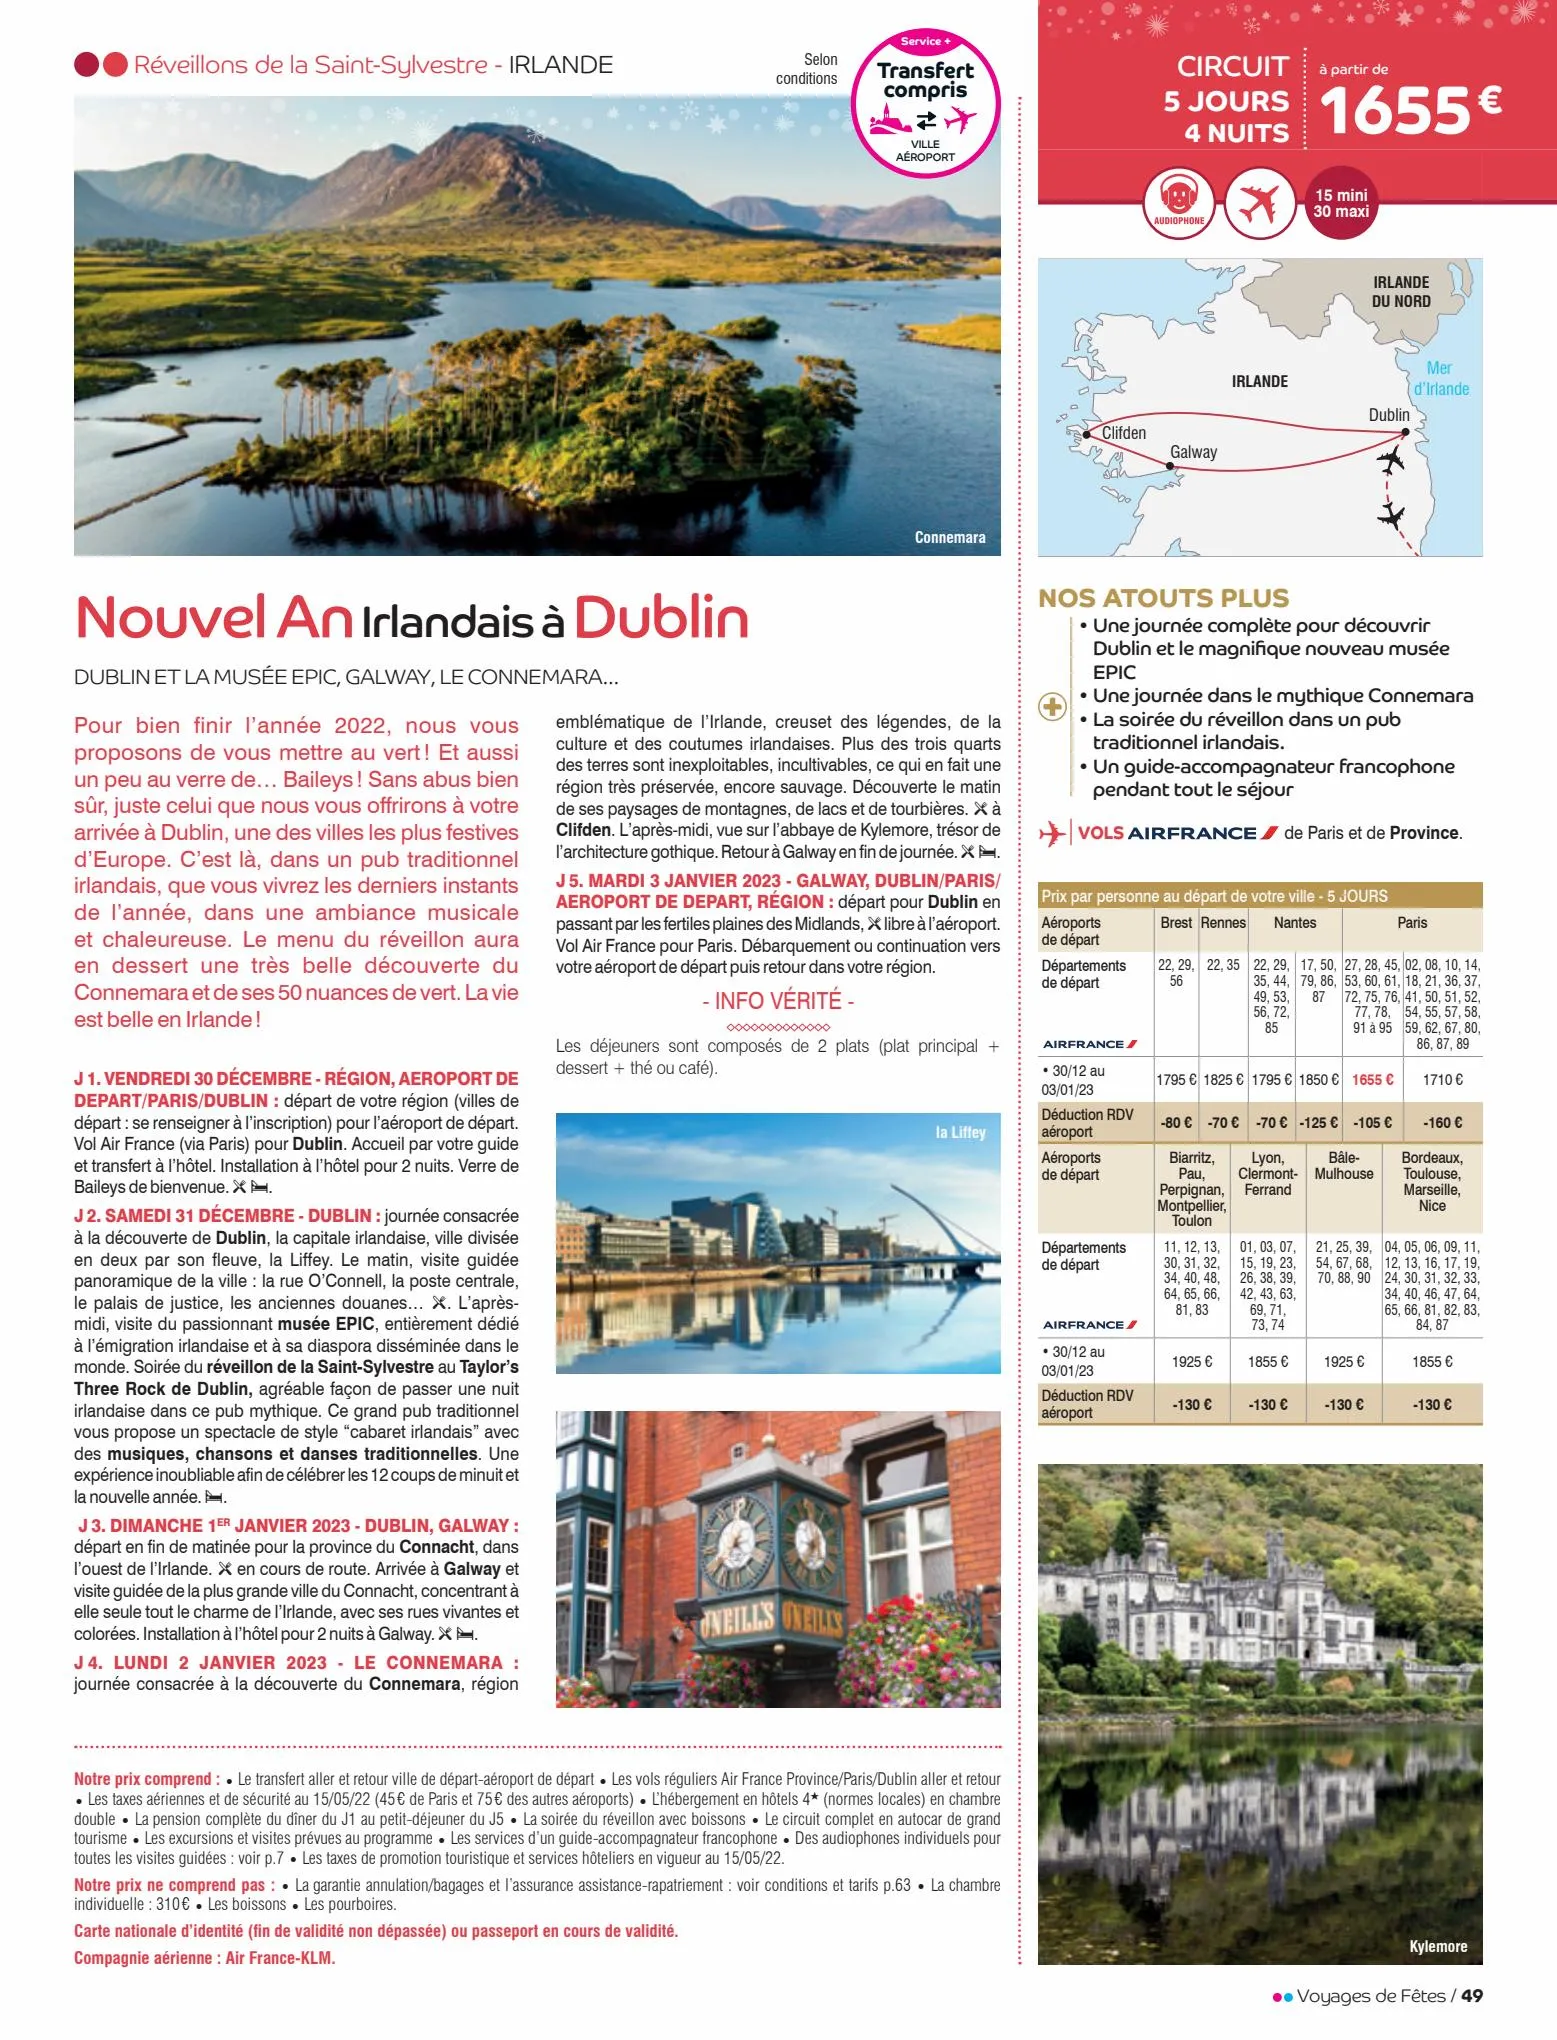 Catalogue Voyages de fêtes 2022-2023, page 00049